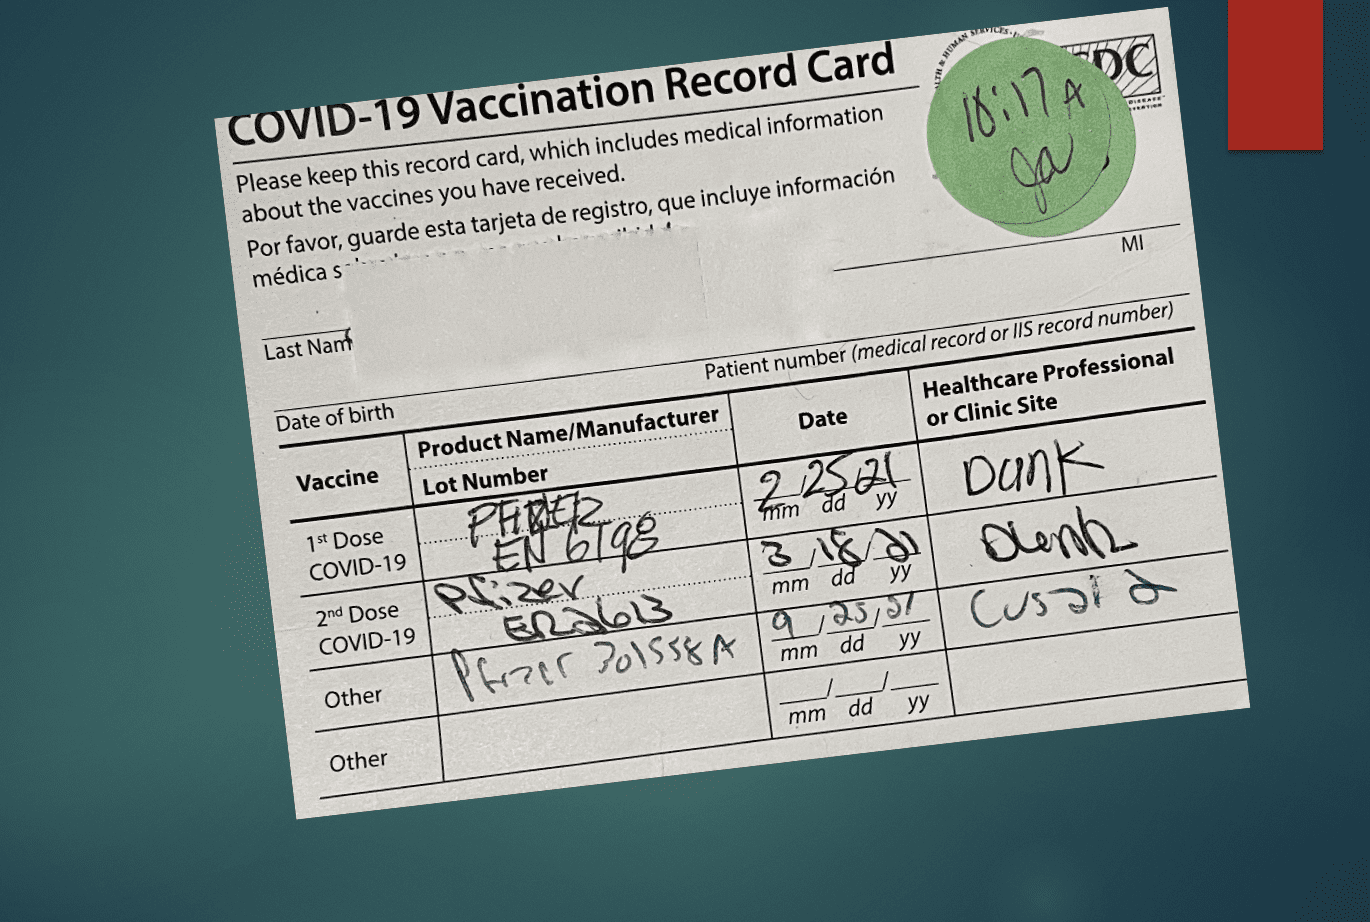 Covid-19 vaccination record card.